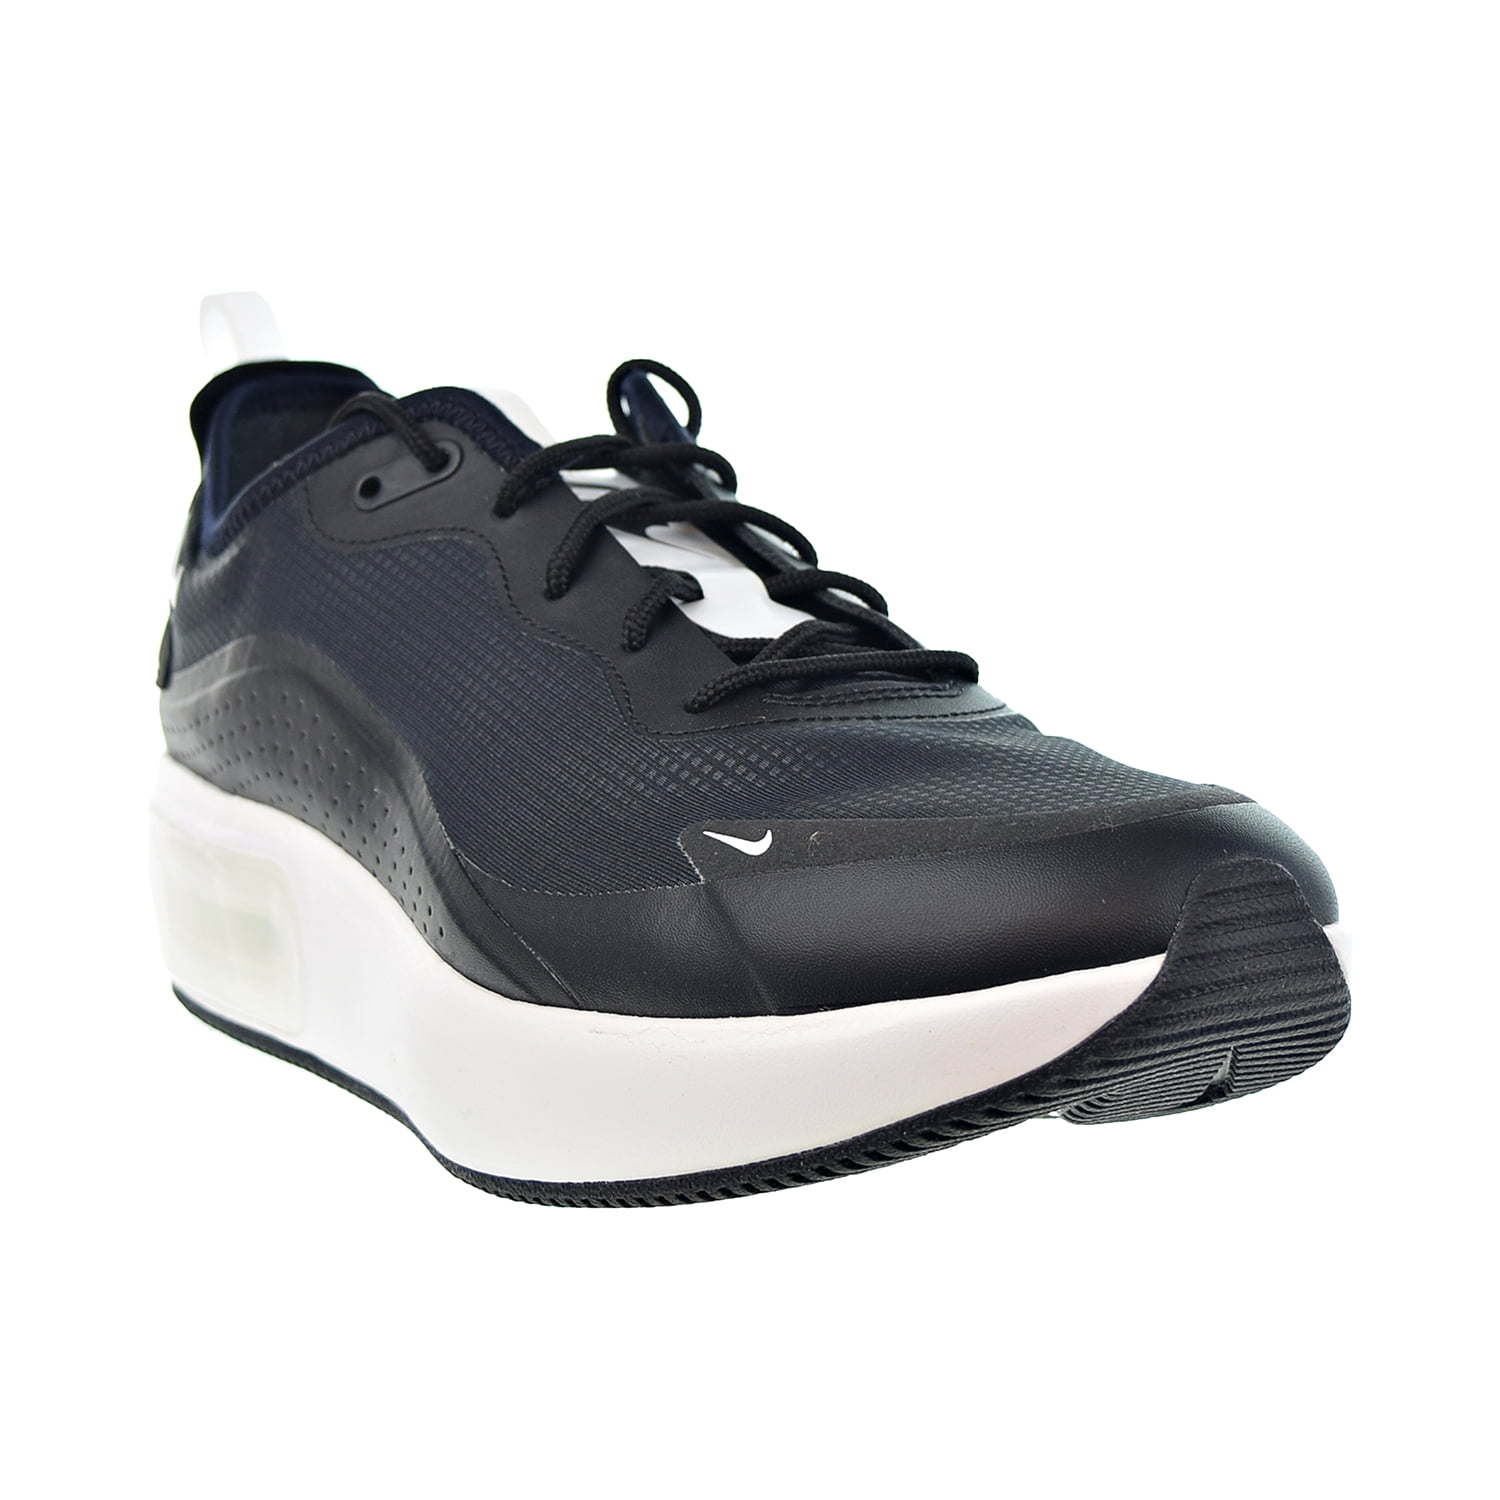 Susurro Fragante montón Nike Air Max Dia Women's Shoes Black-Summit White aq4312-001 - Walmart.com